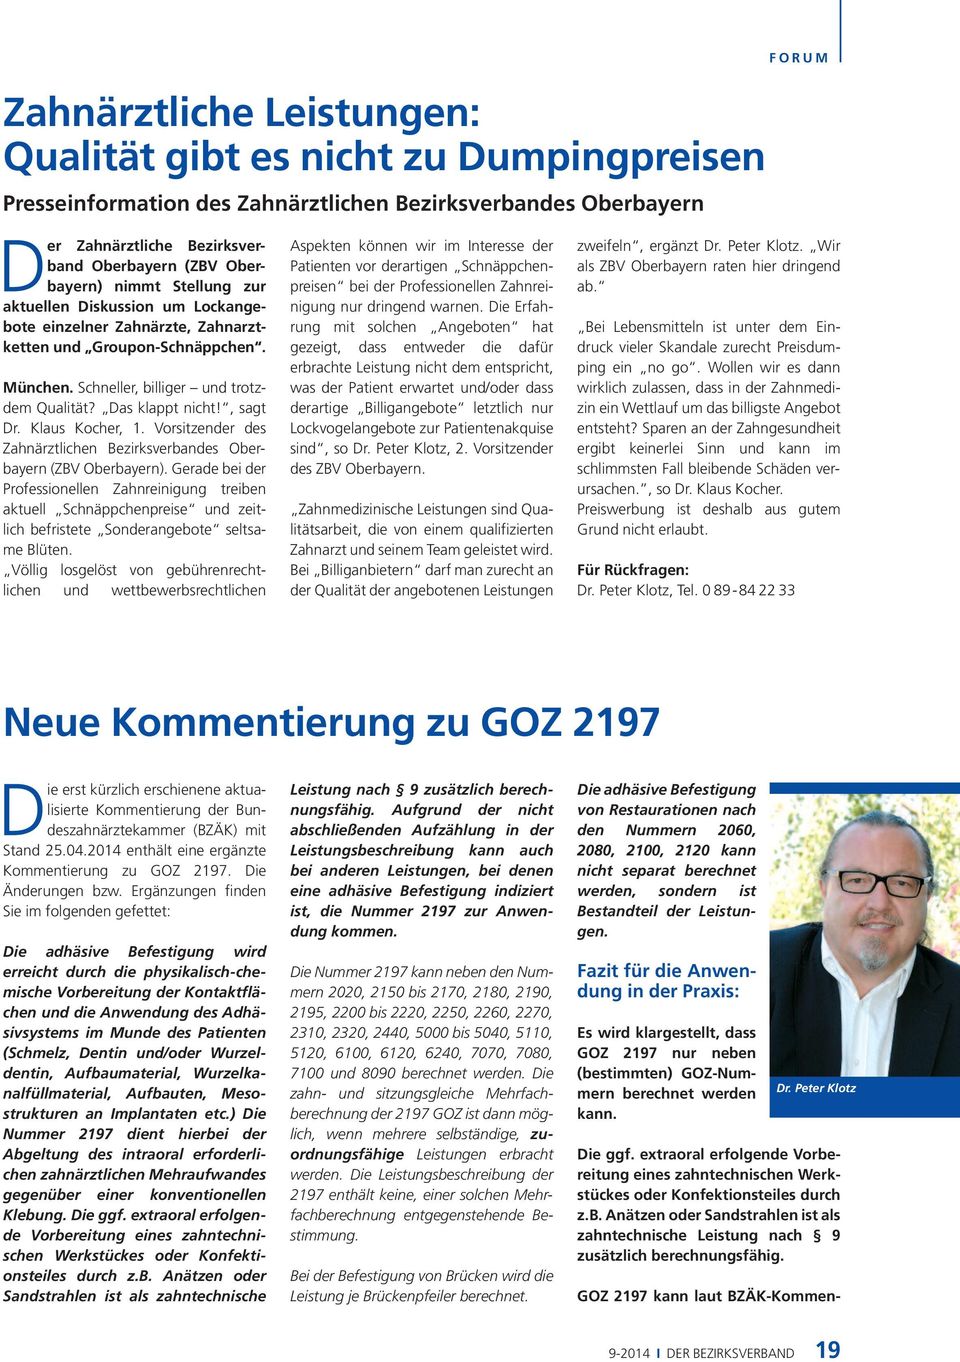 , sagt Dr. Klaus Kocher, 1. Vorsitzender des Zahnärztlichen Bezirksverbandes Oberbayern (ZBV Oberbayern).